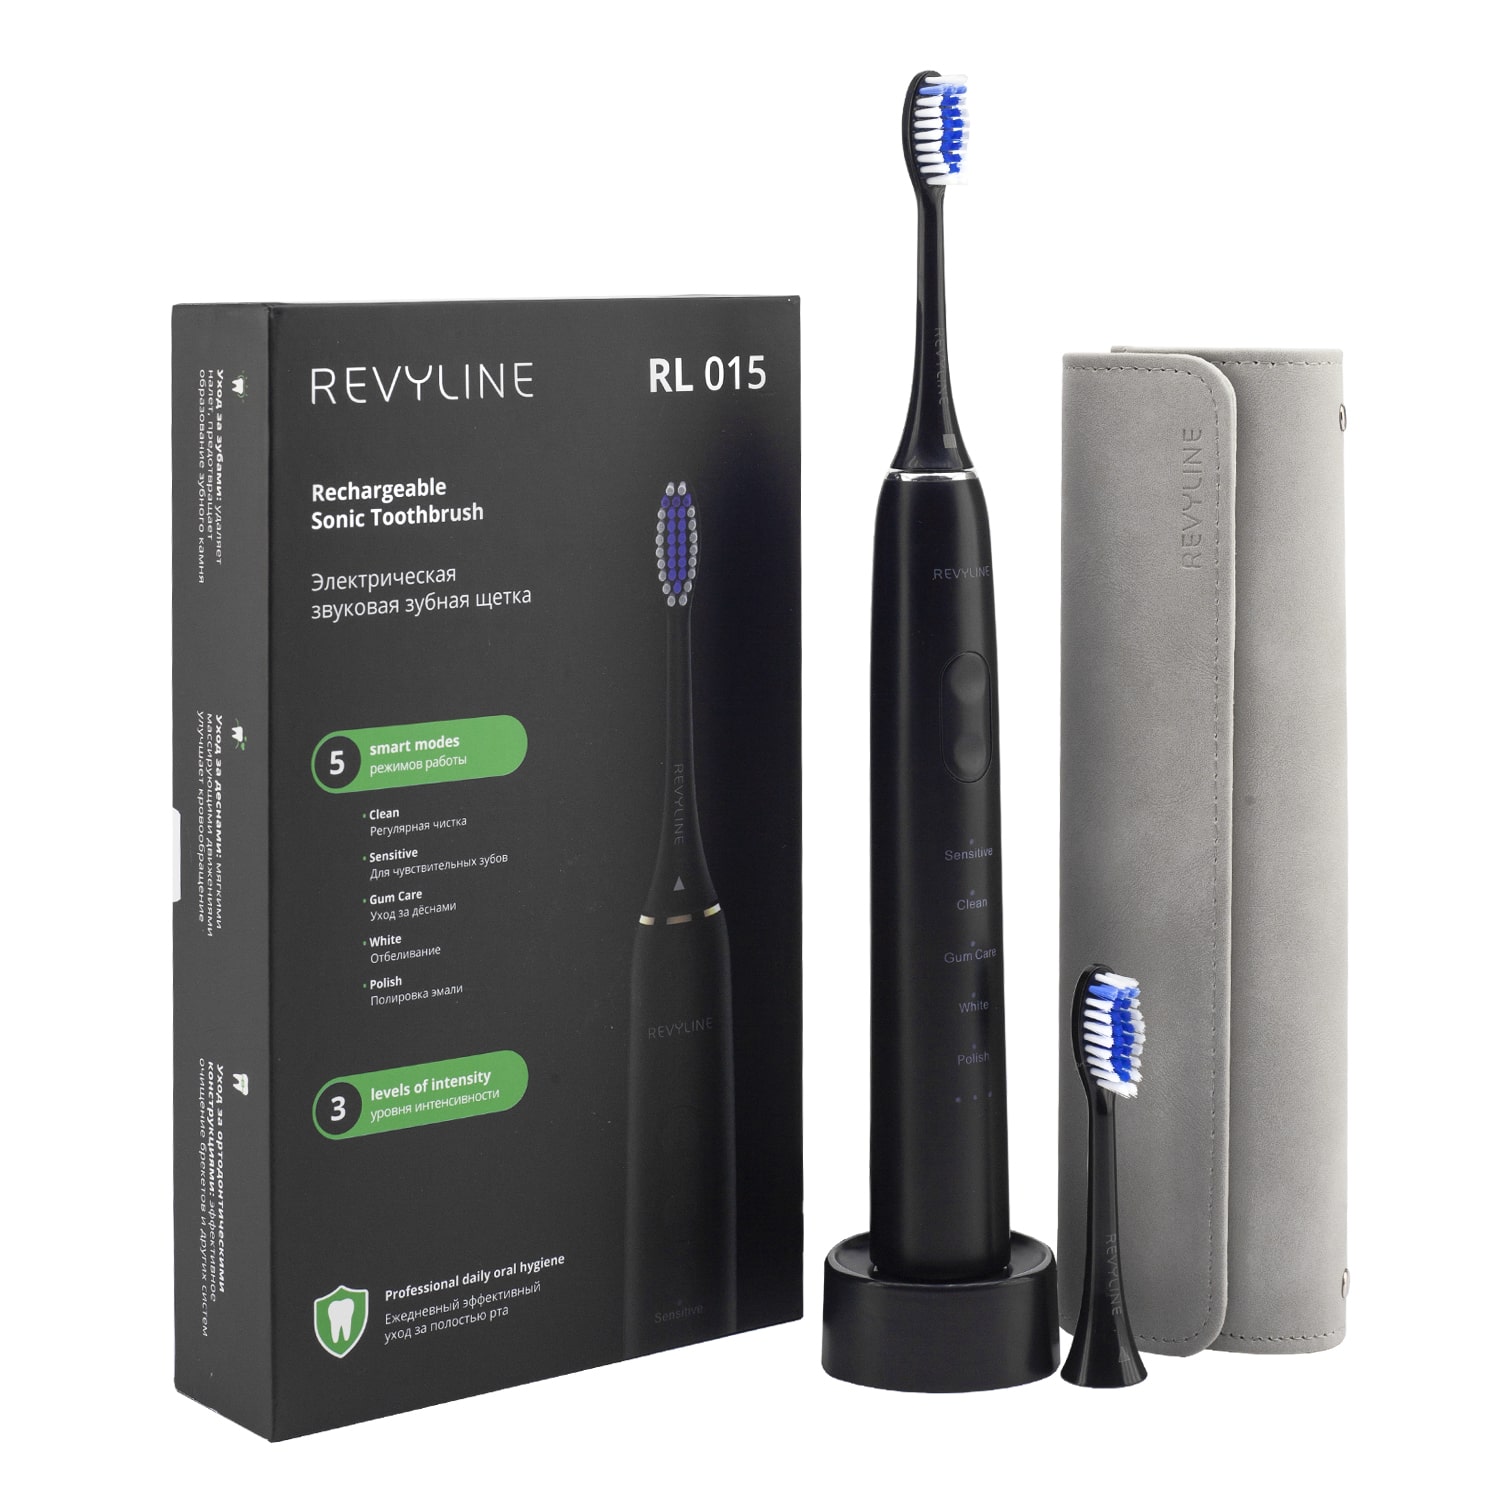 REVYLINE Электрическая звуковая зубная щетка RL 015, черная, 1 шт (REVYLINE, Электрические зубные щетки) электрическая зубная щетка звуковая revyline rl 015 1 шт